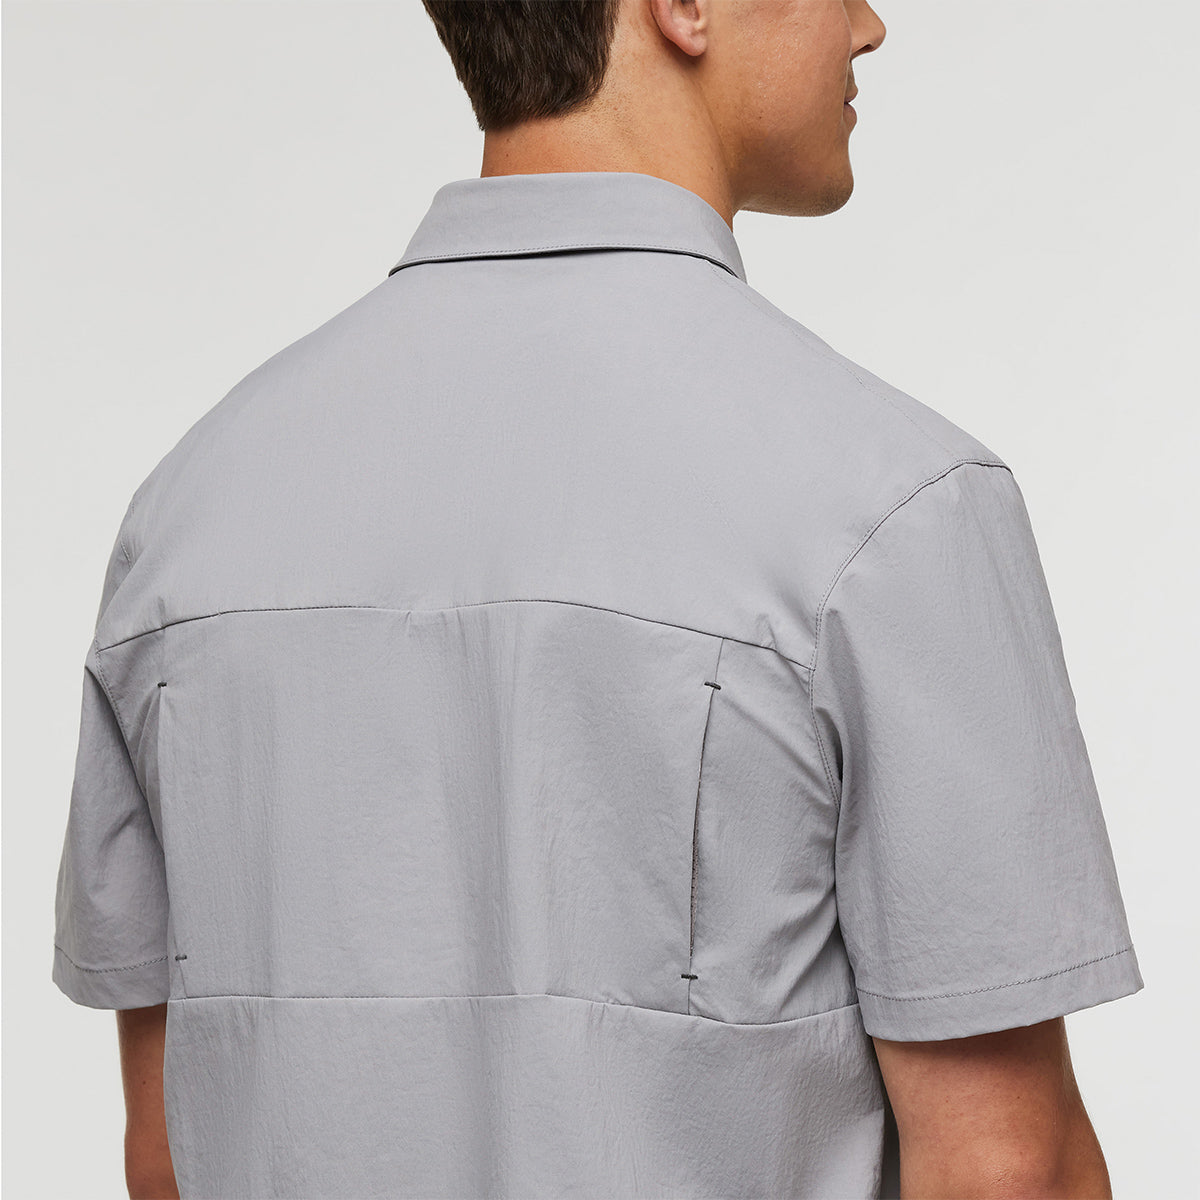 Sumaco Short-Sleeve Shirt - MENS